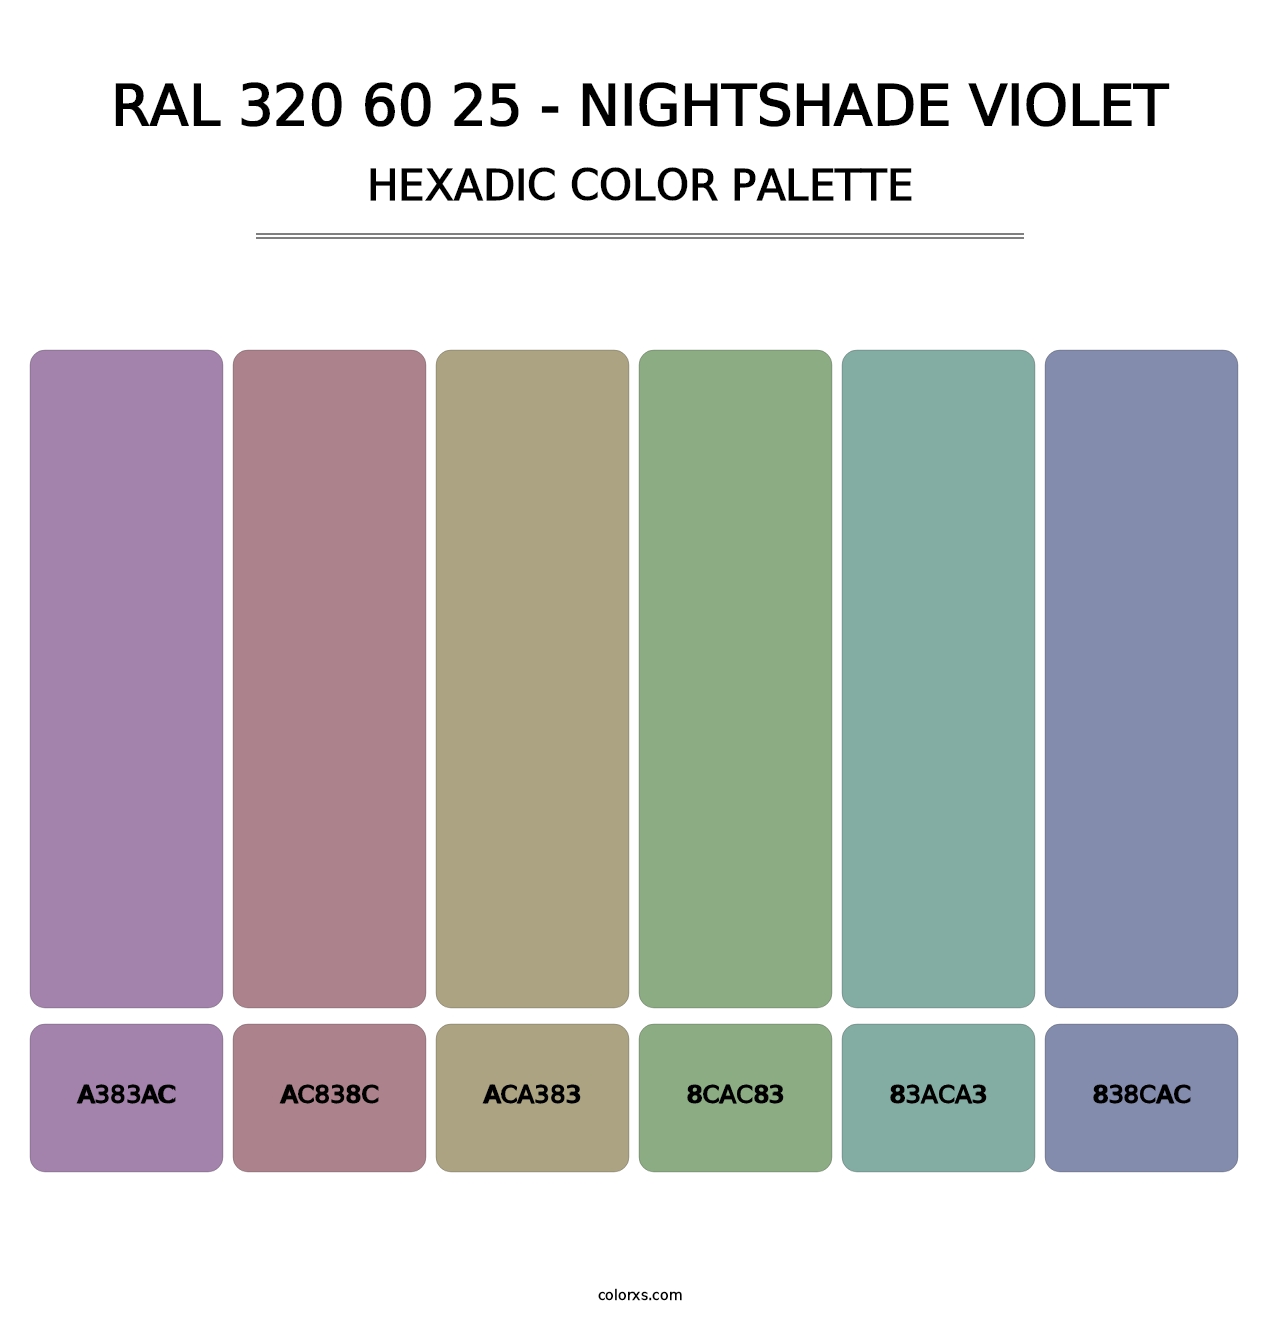 RAL 320 60 25 - Nightshade Violet - Hexadic Color Palette